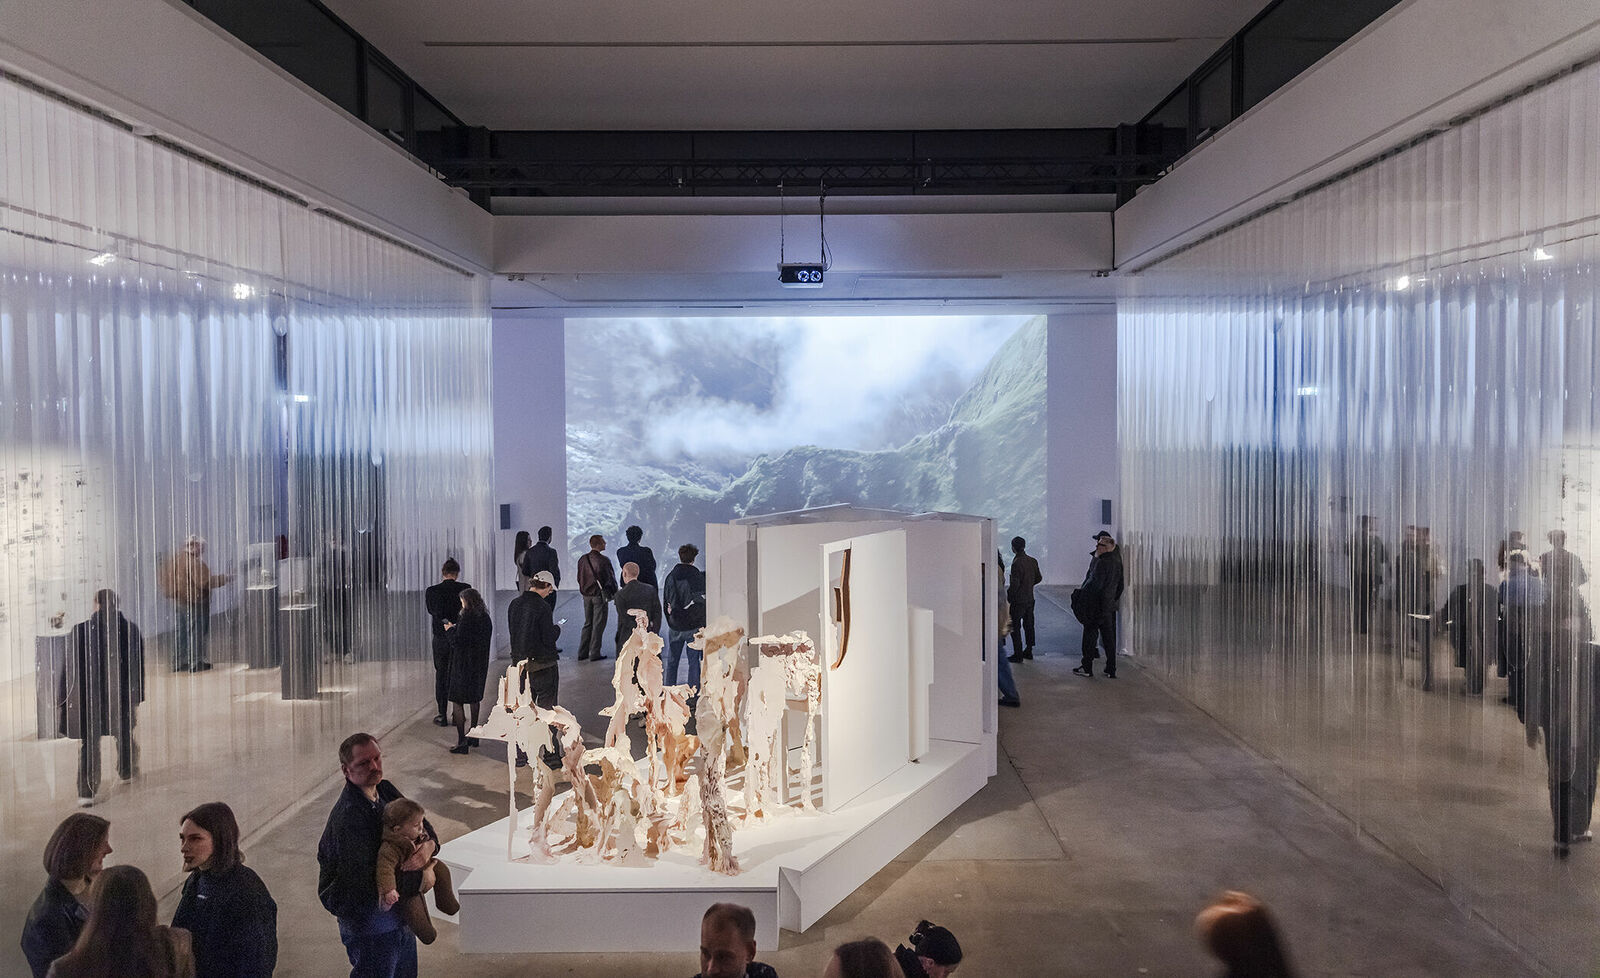 Besucher betrachten Kunstwerke in einem modernen Galerieraum, abgetrennt durch transparente, hängende Trennwände. Im Zentrum steht eine Skulpturenausstellung auf einem weißen Podest, und an der hinteren Wand wird ein großes Landschaftsbild projiziert